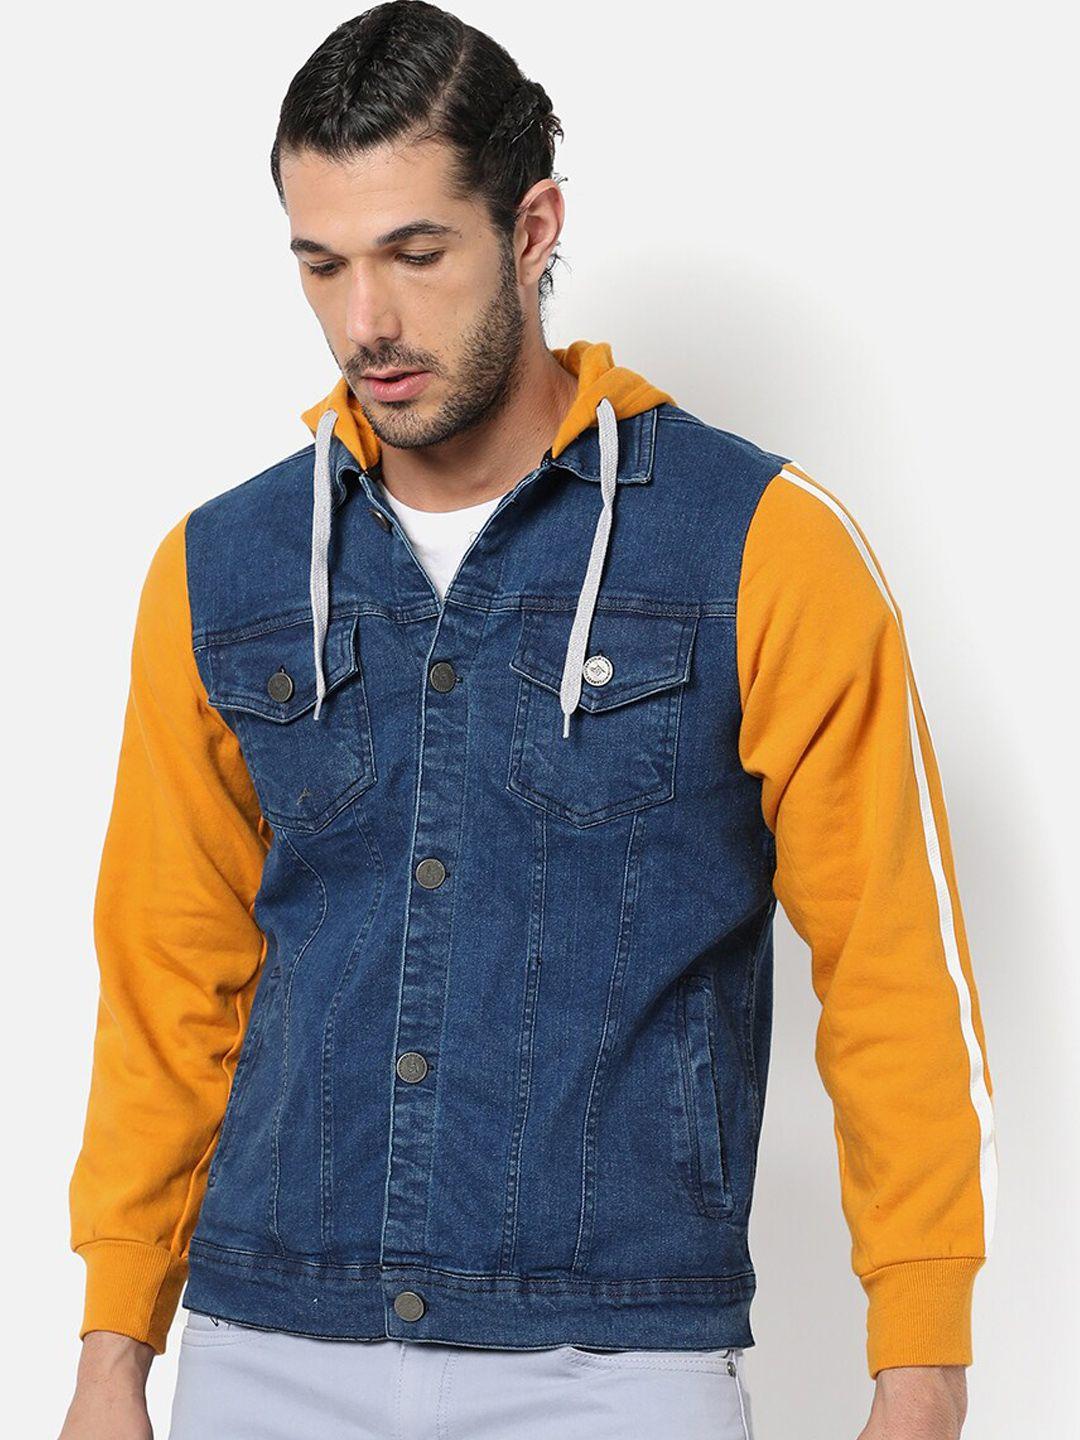 campus-sutra-men-blue-&-mustard-washed-colourblocked-crop-denim-jacket